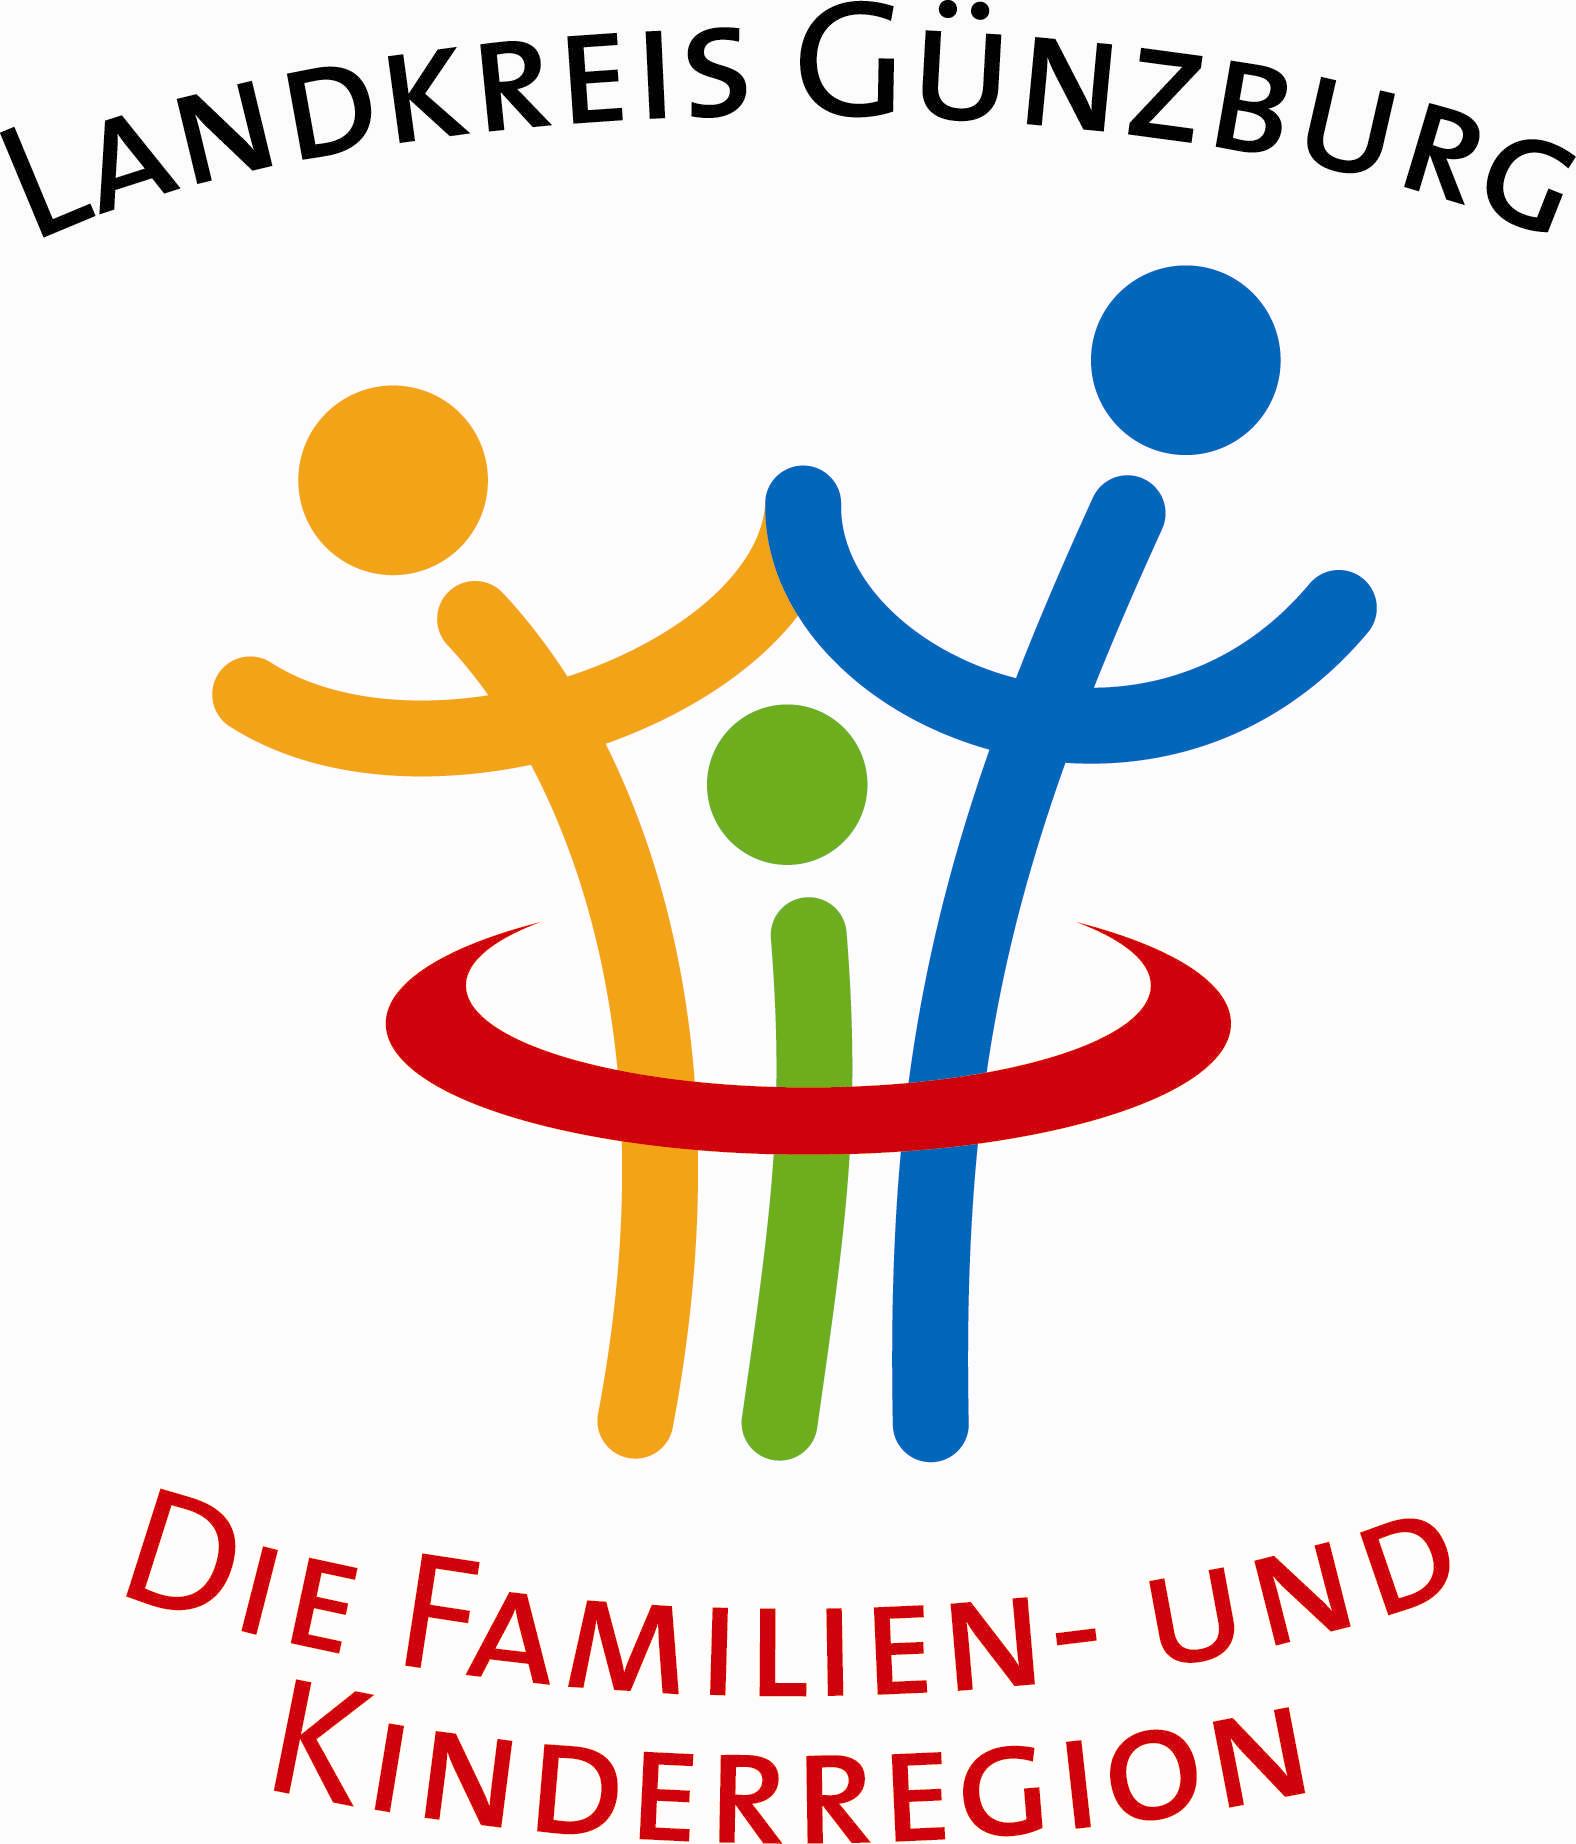 Kinder- und Familienregion Günzburg Logo (Landratsamt)